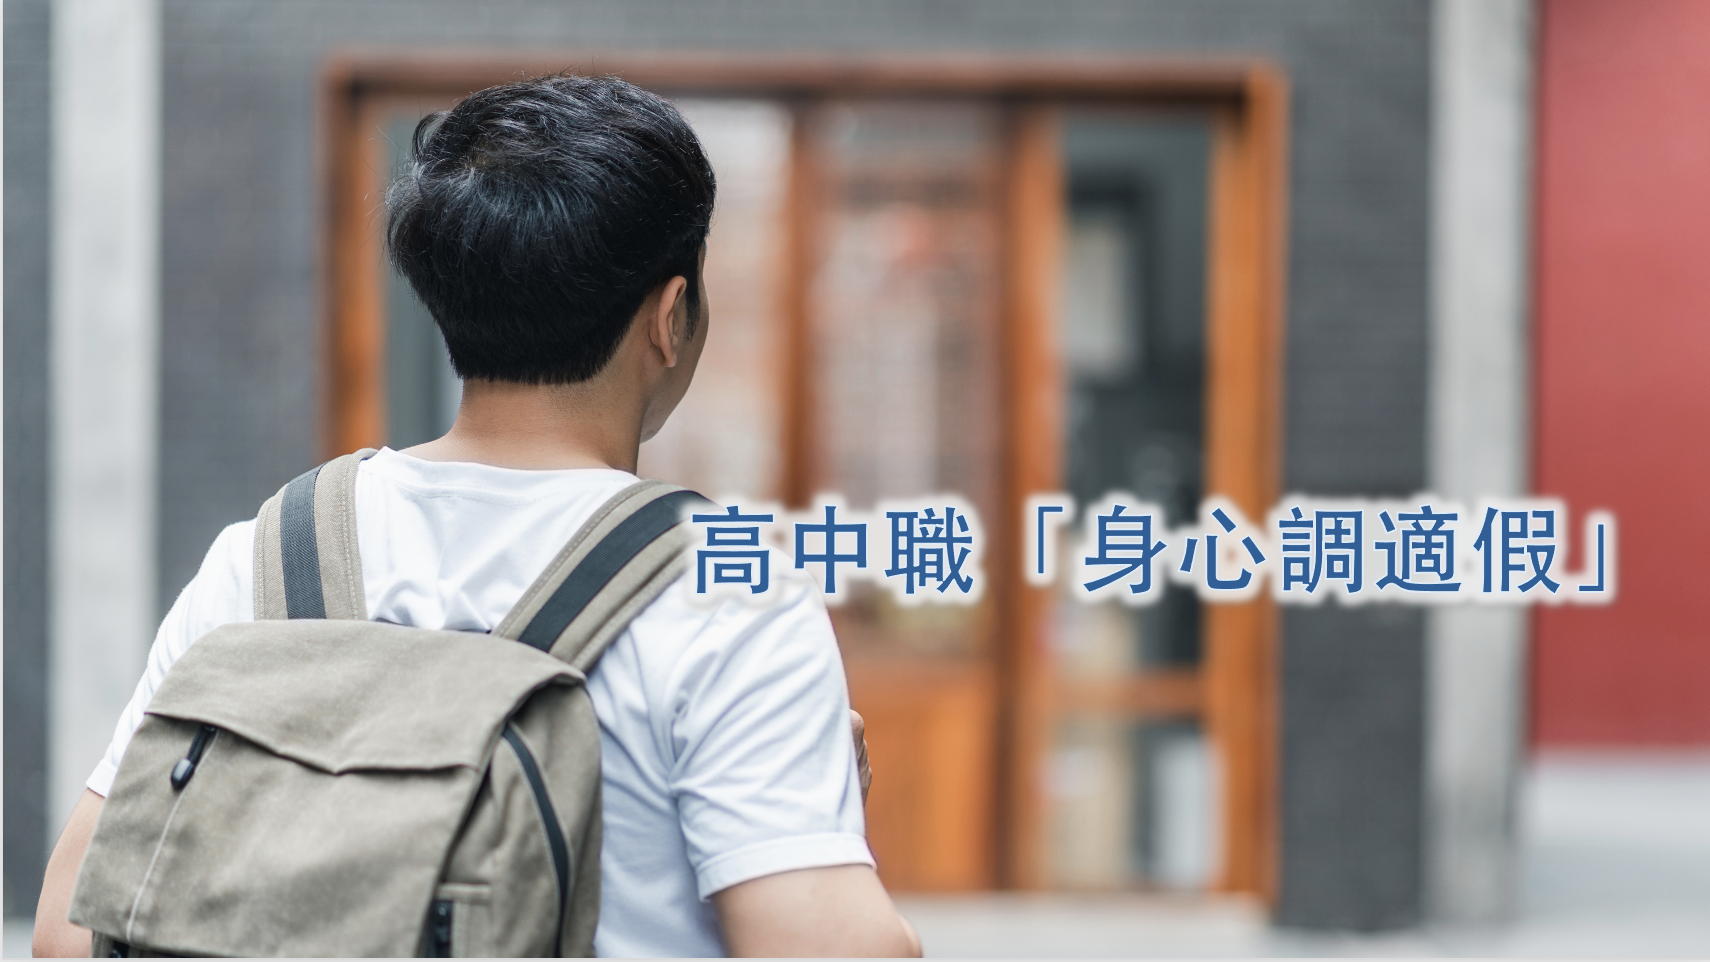 Trường trung học tăng "Ngày nghỉ điều chỉnh tâm thần" mới. 42 trường thử nghiệm. Nhóm phụ huynh kêu gọi Bộ Giáo dục (Đài Loan) hoàn thiện các biện pháp hỗ trợ